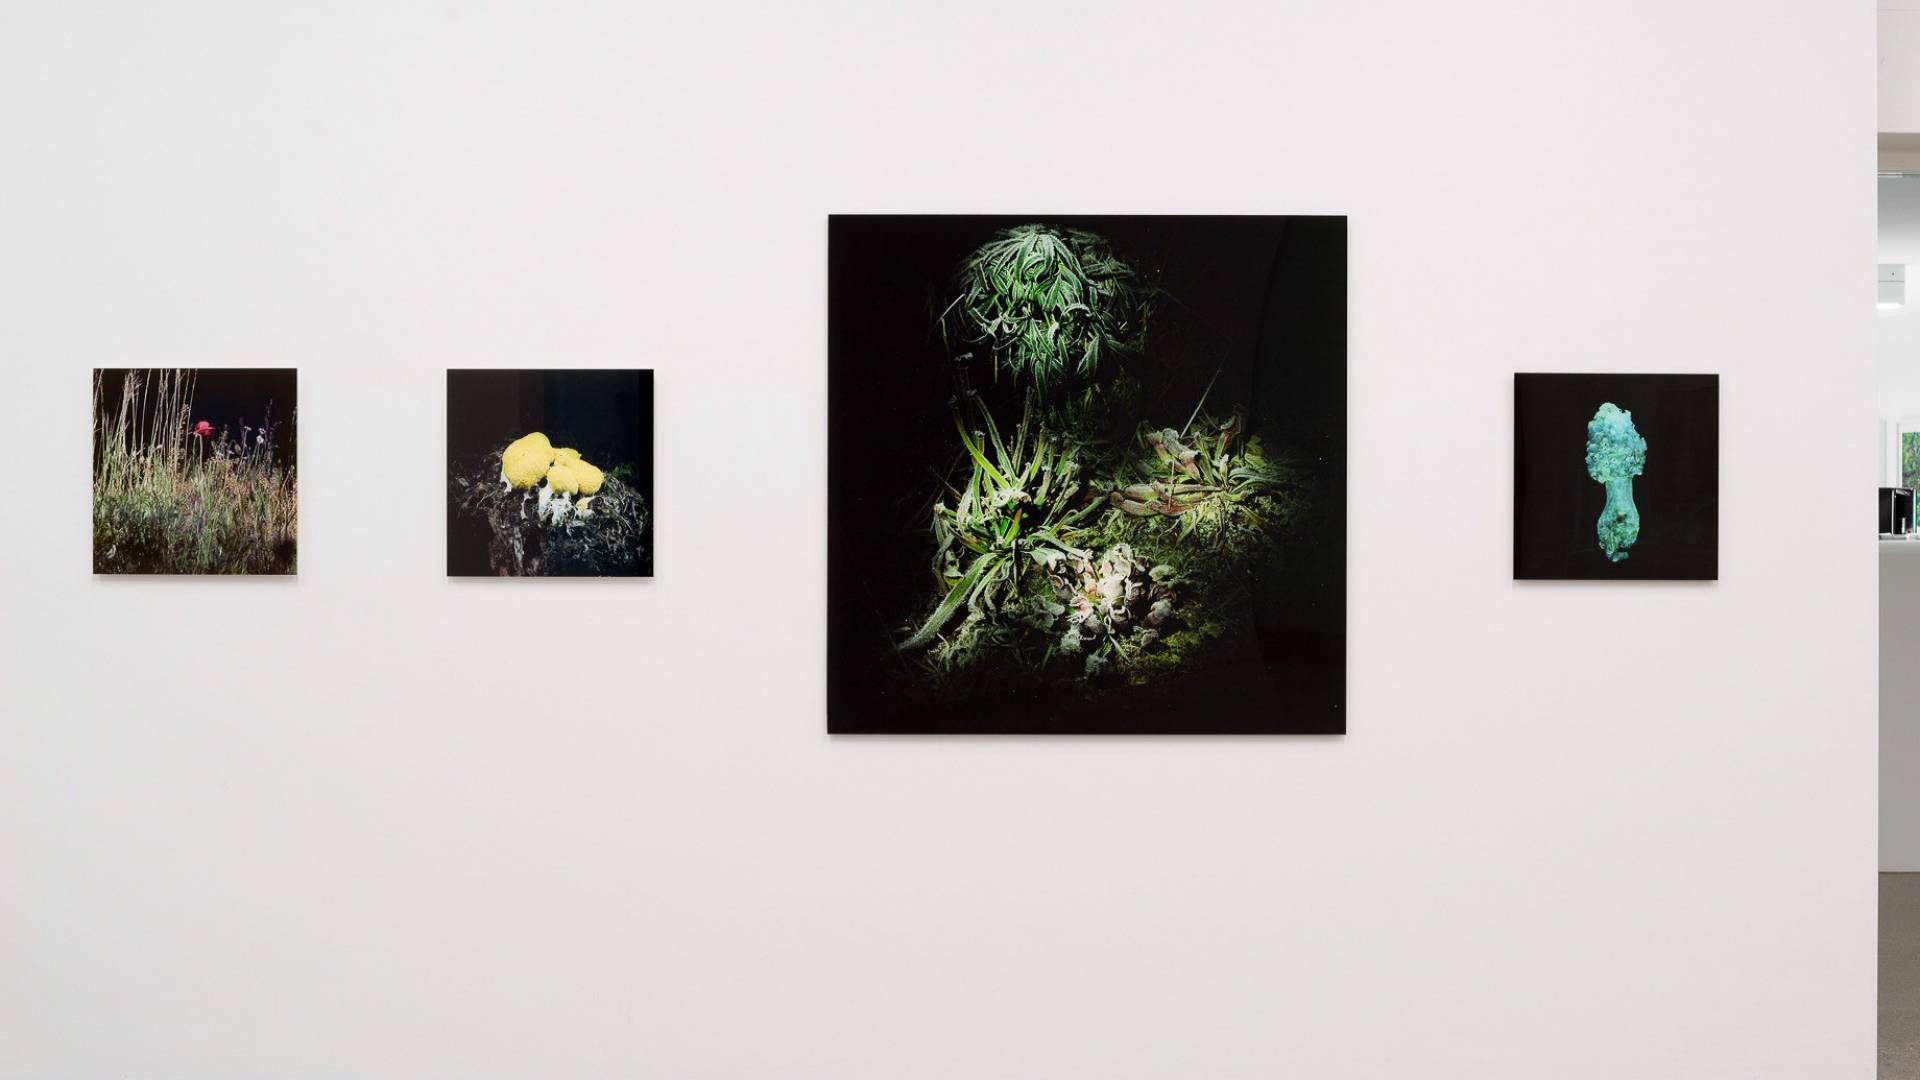 Arrachées aux ténèbres: Marianne Engel montre, dans leur milieu naturel, des plantes carnivores qu'elle a photographiées au cours de ses expéditions nocturnes.